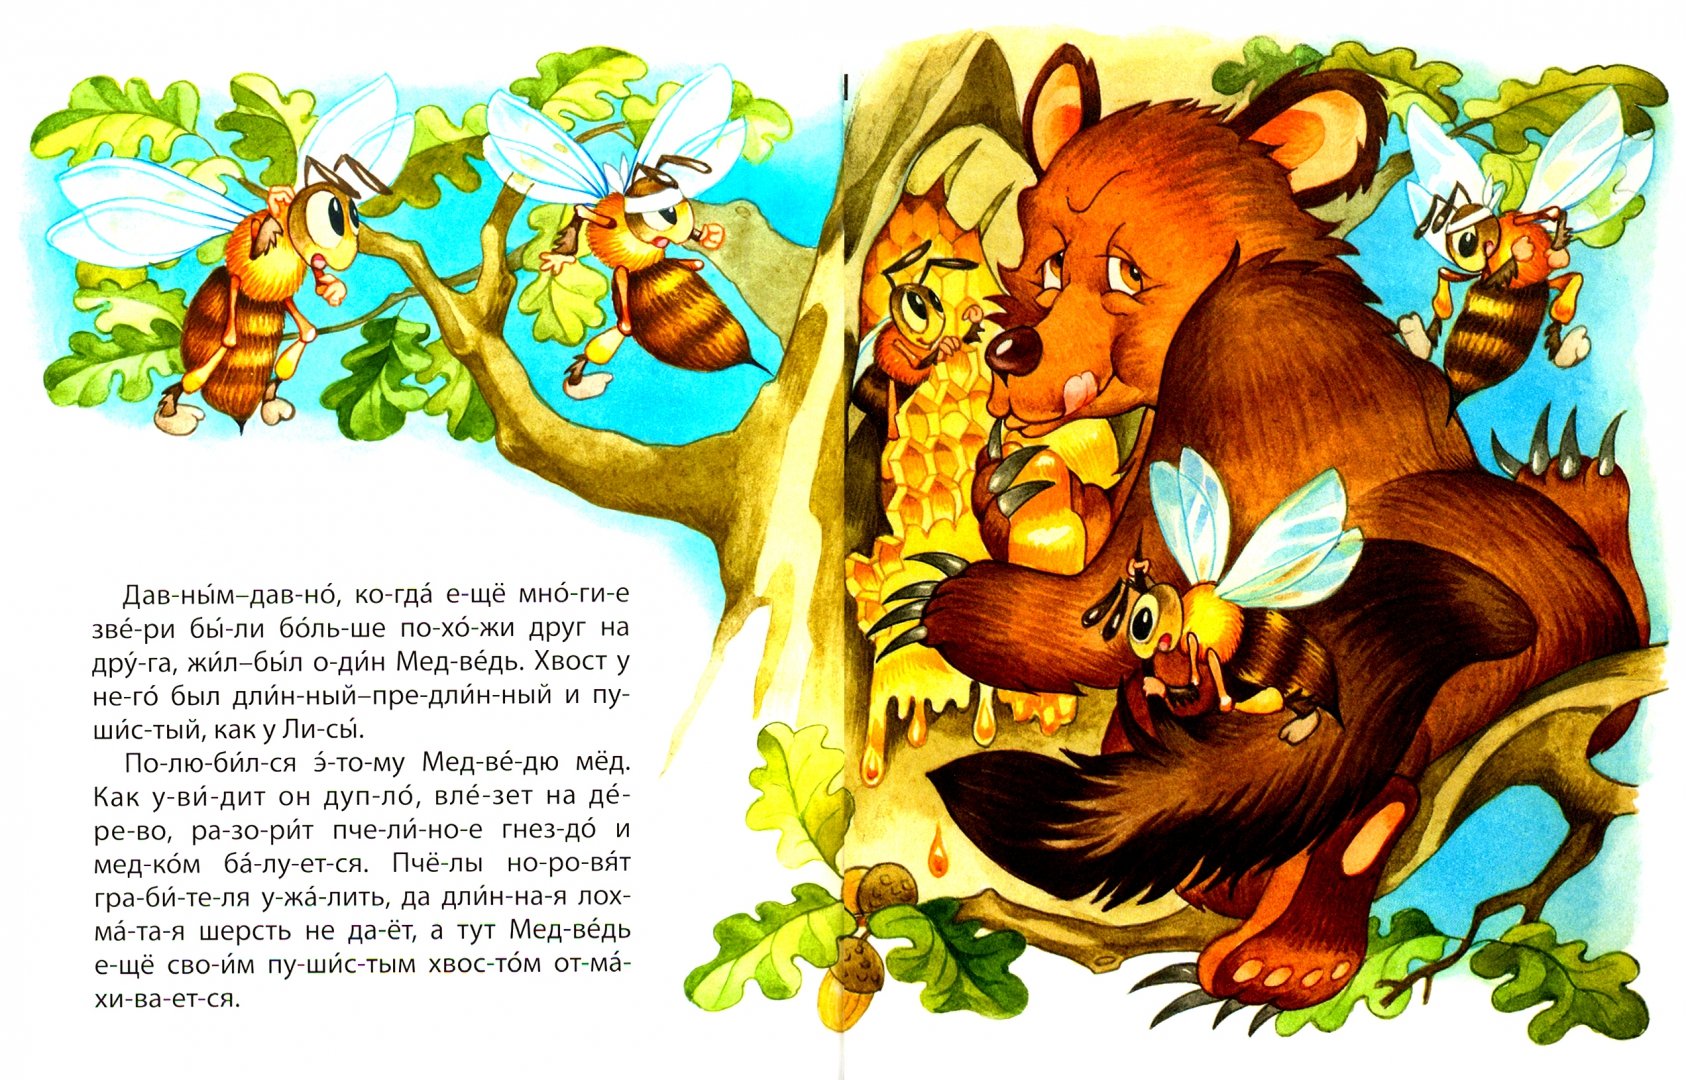 Детские сказки читать онлайн - детские сказки почему у медведя короткий хвост индонезийские сказки детские сказки народов мира онлайн, детская библиотека